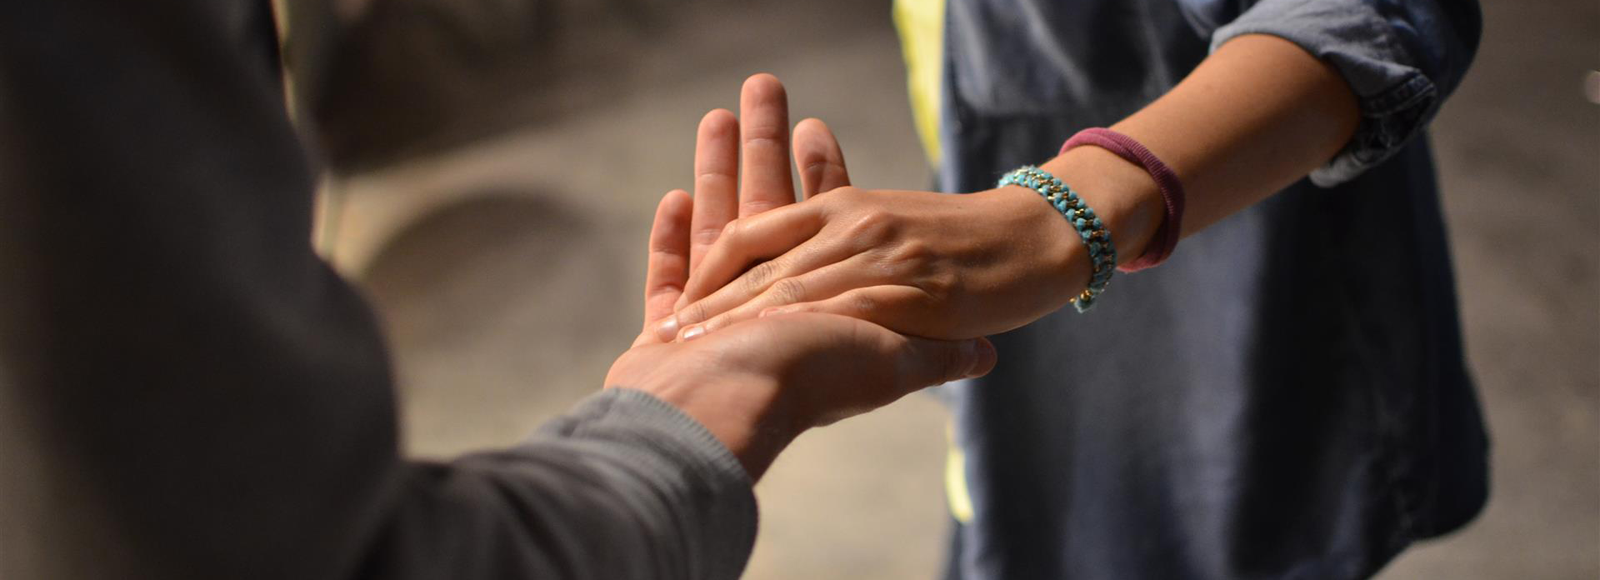 deux personnes se tiennent la main